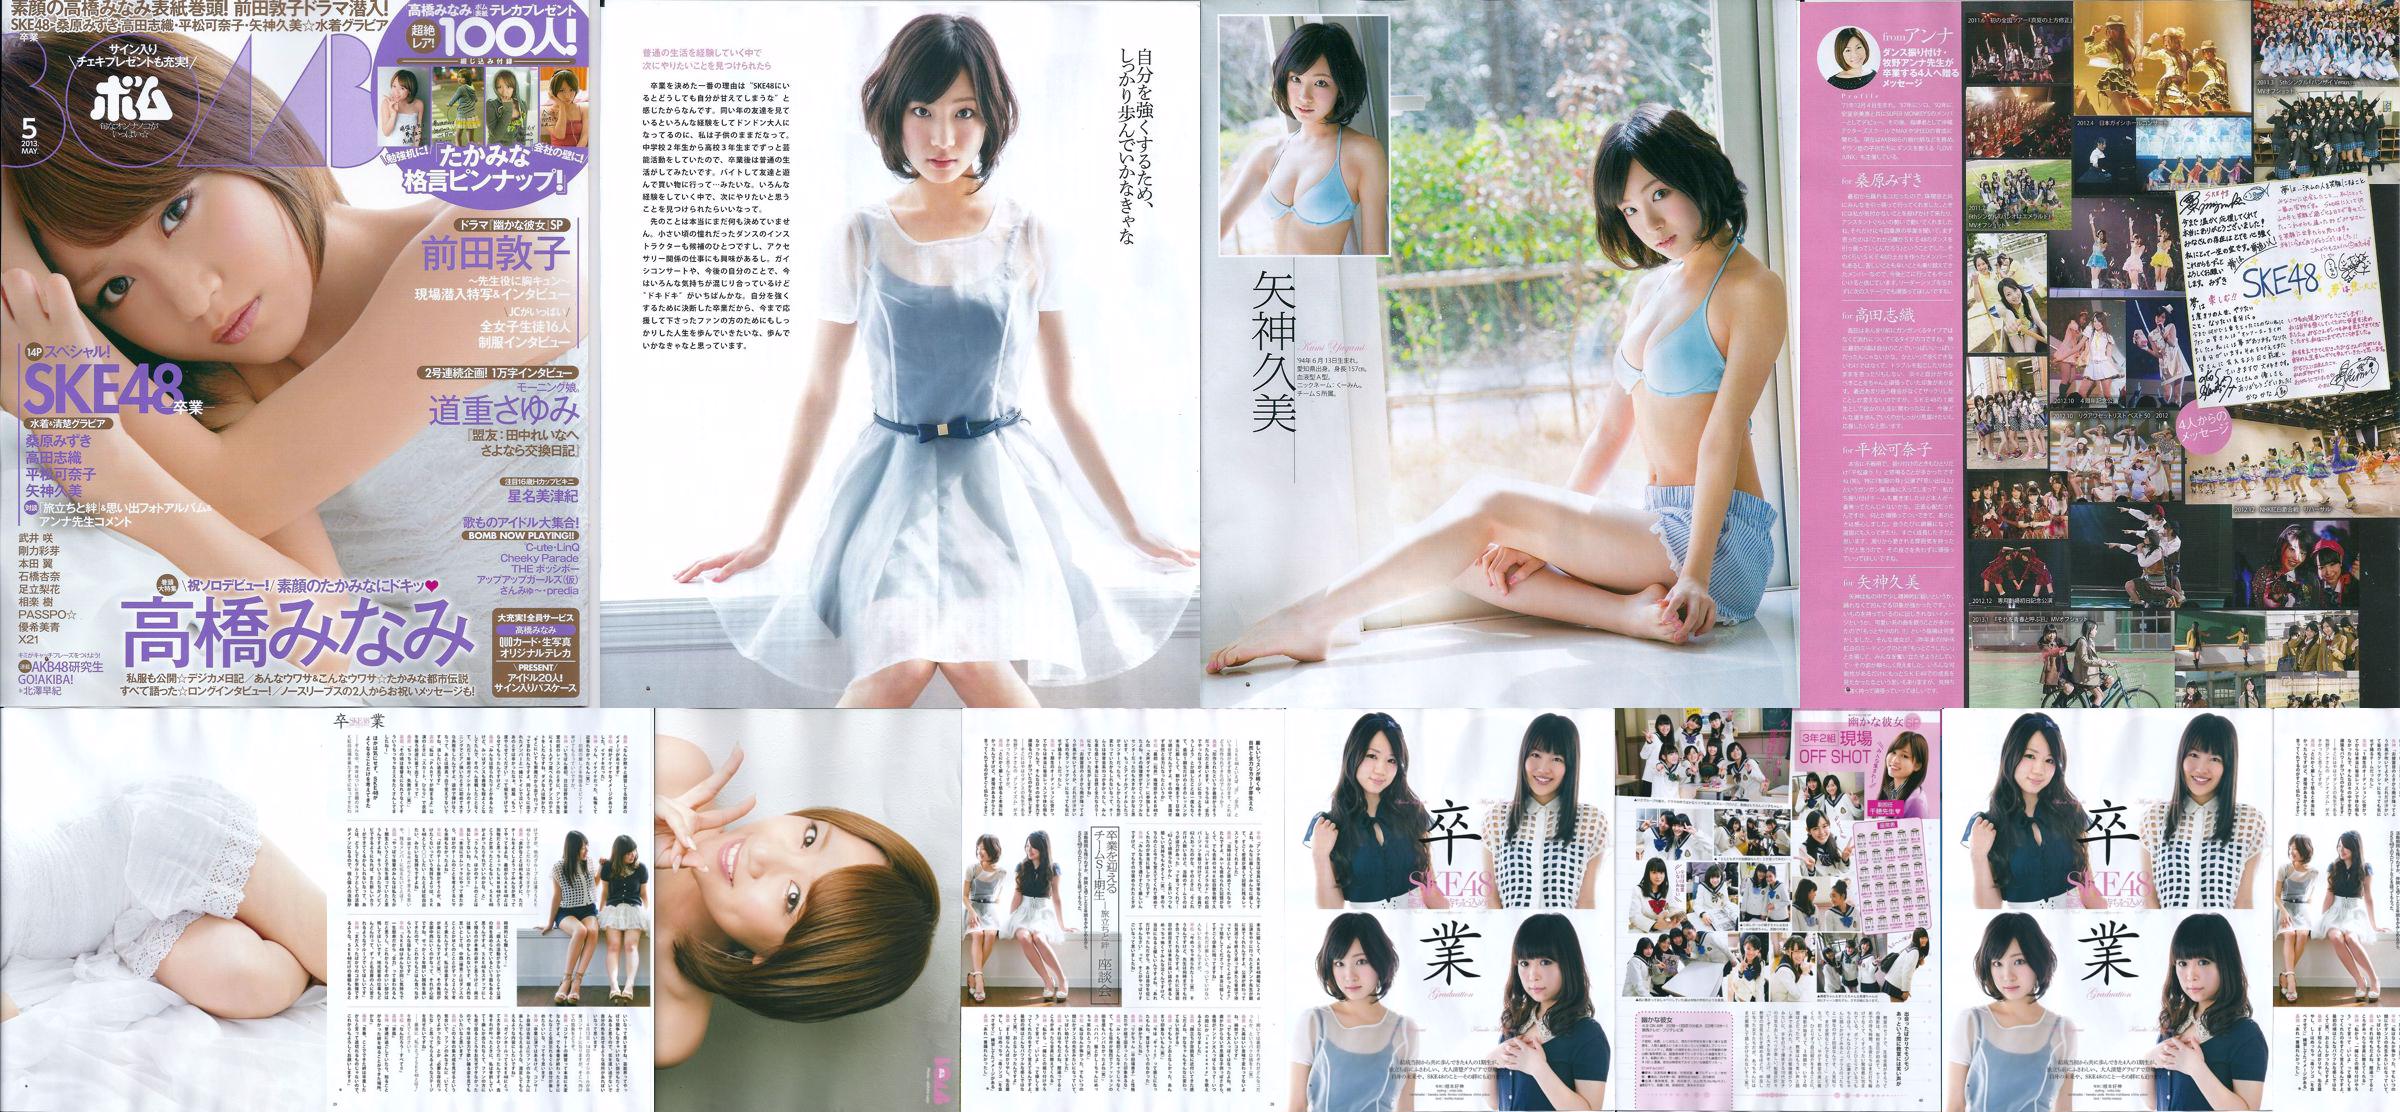 [Majalah Bom] 2013 No.05 Kumi Yagami Minami Takahashi Atsuko Maeda Foto No.a98f85 Halaman 1